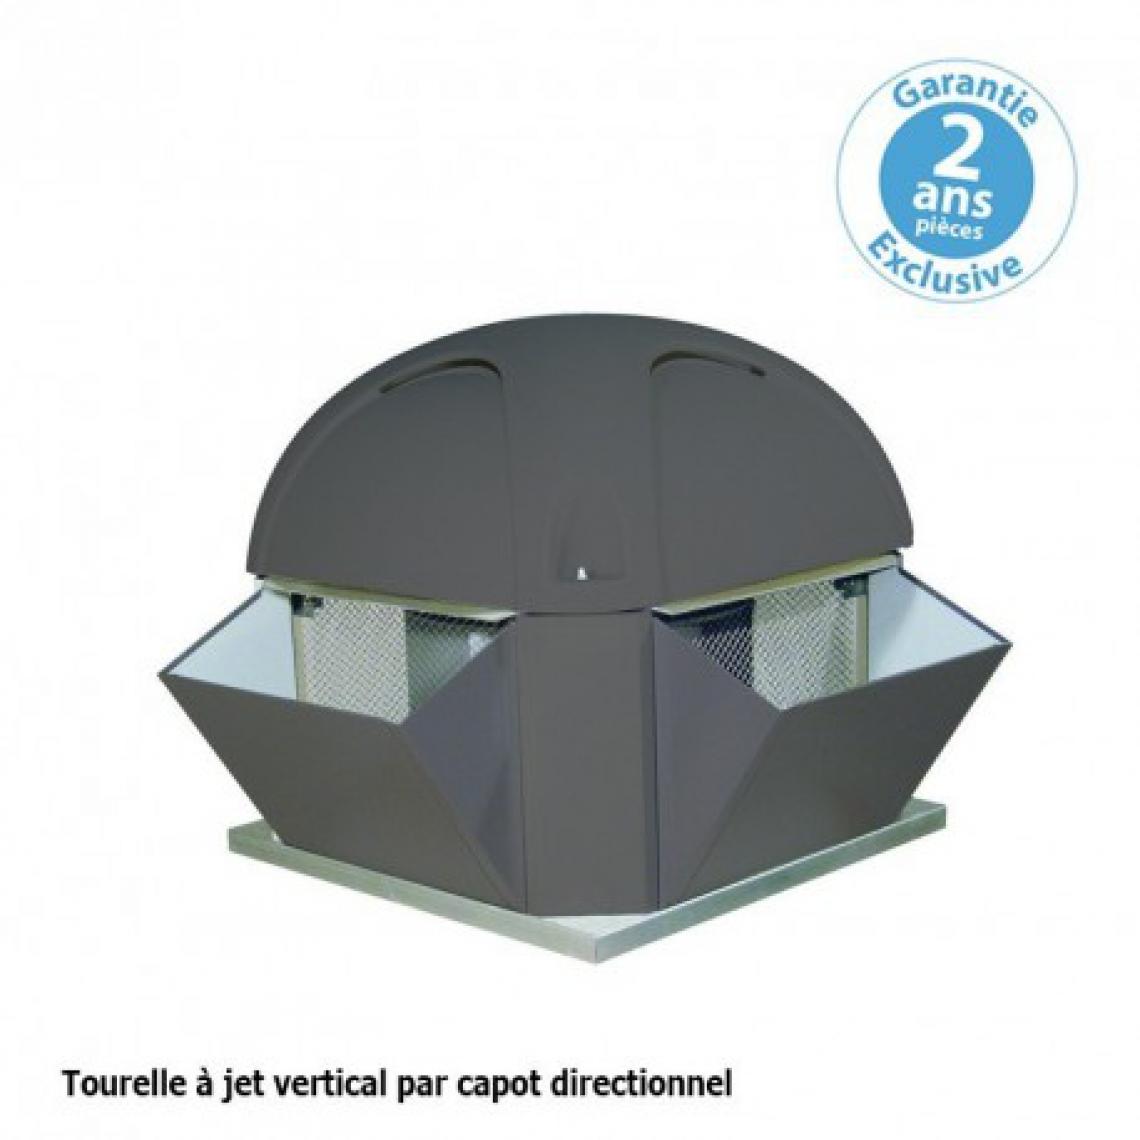 Furnotel - Tourelle 1 vitesse - triphasée - refoulement vertical - 4500 m³ / h sous 260 Pa - - VMC, Ventilation